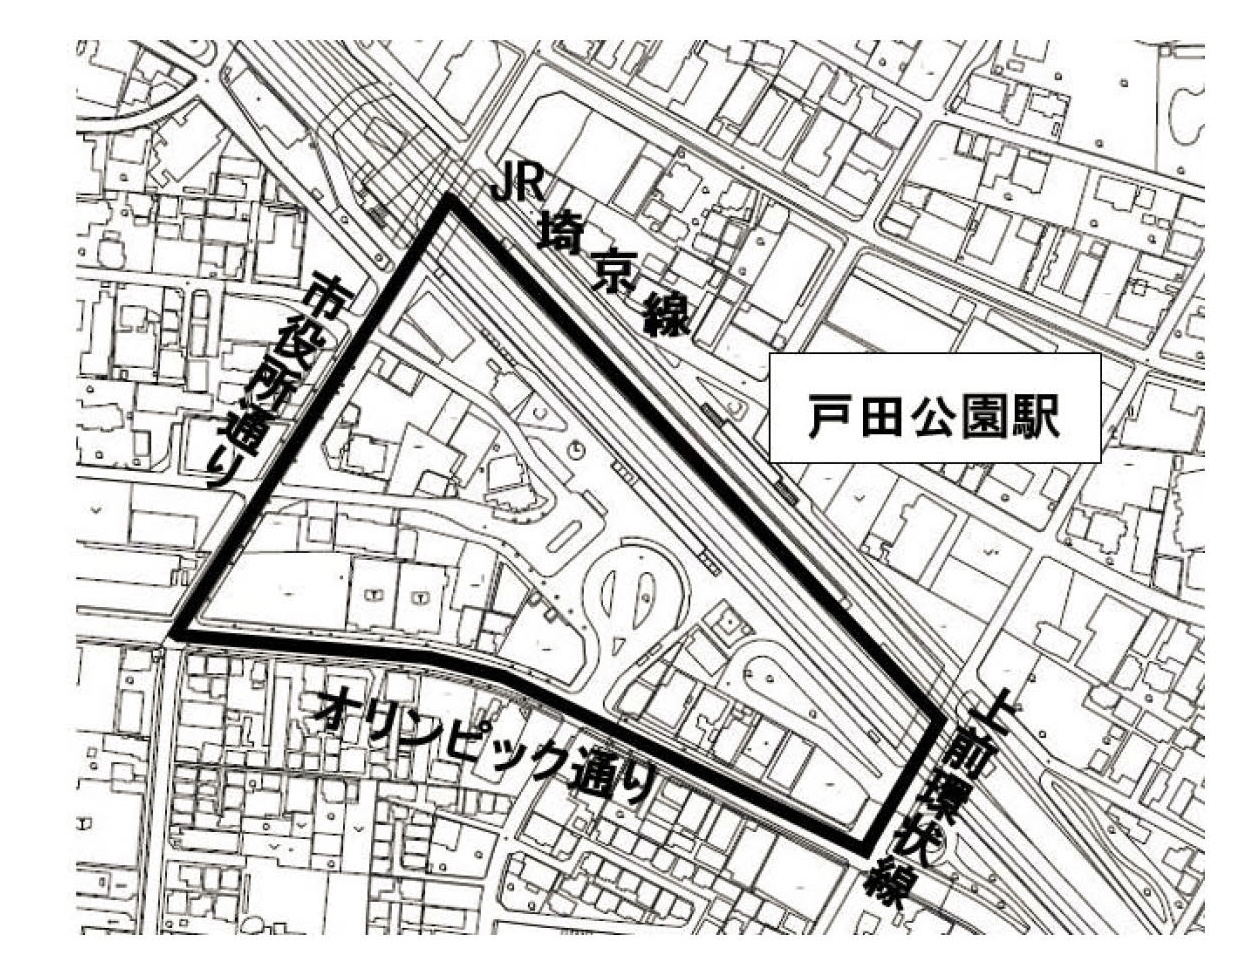 戸田公園駅西口駅前地区の範囲を示した地図